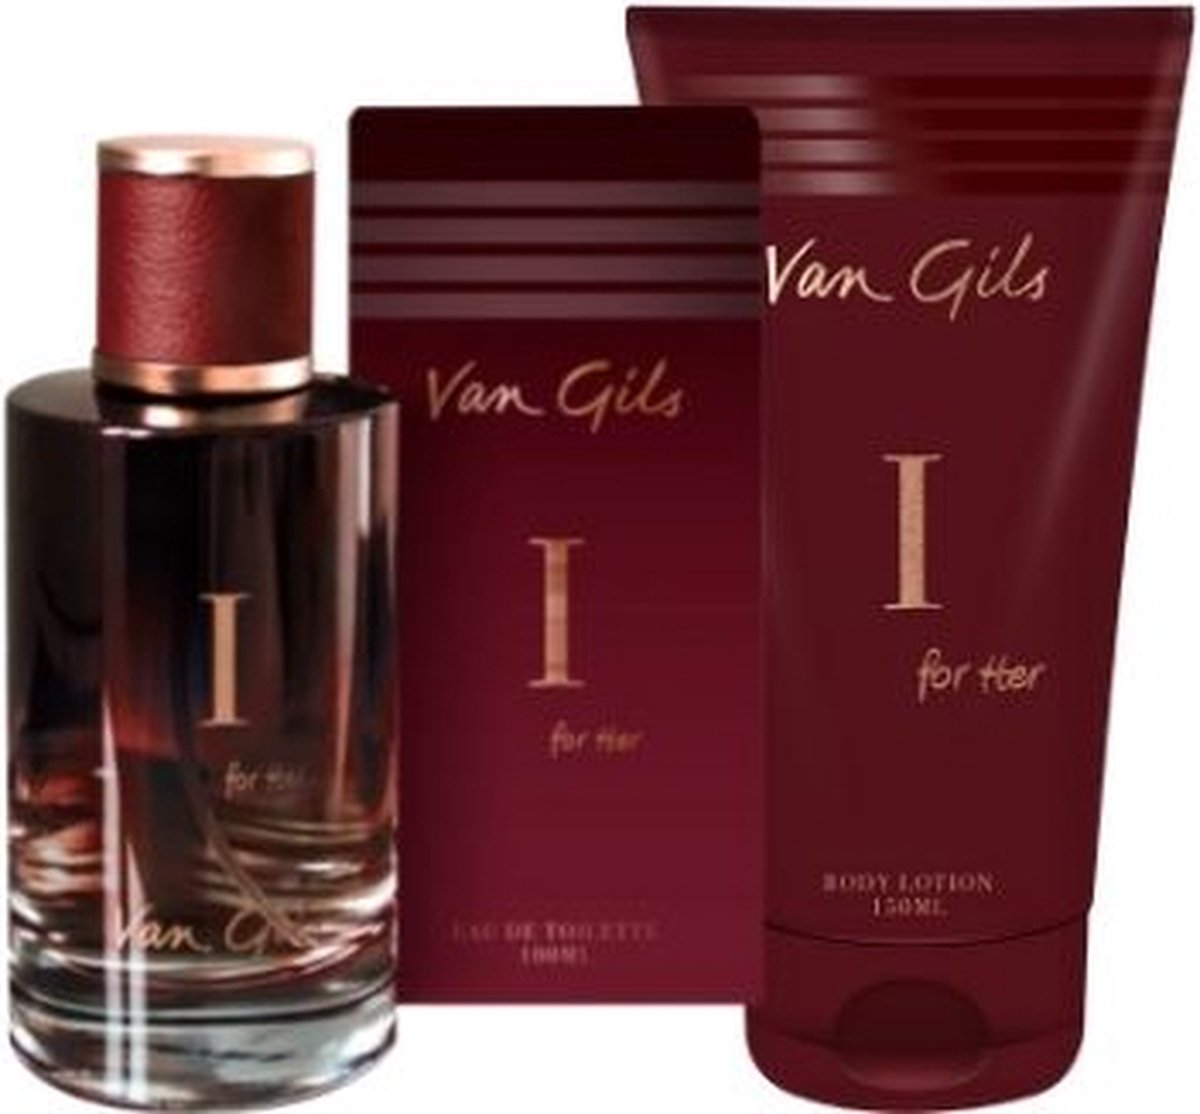 Van Gils I For Her Eau de Toilette & Body Lotion | Cadeauset